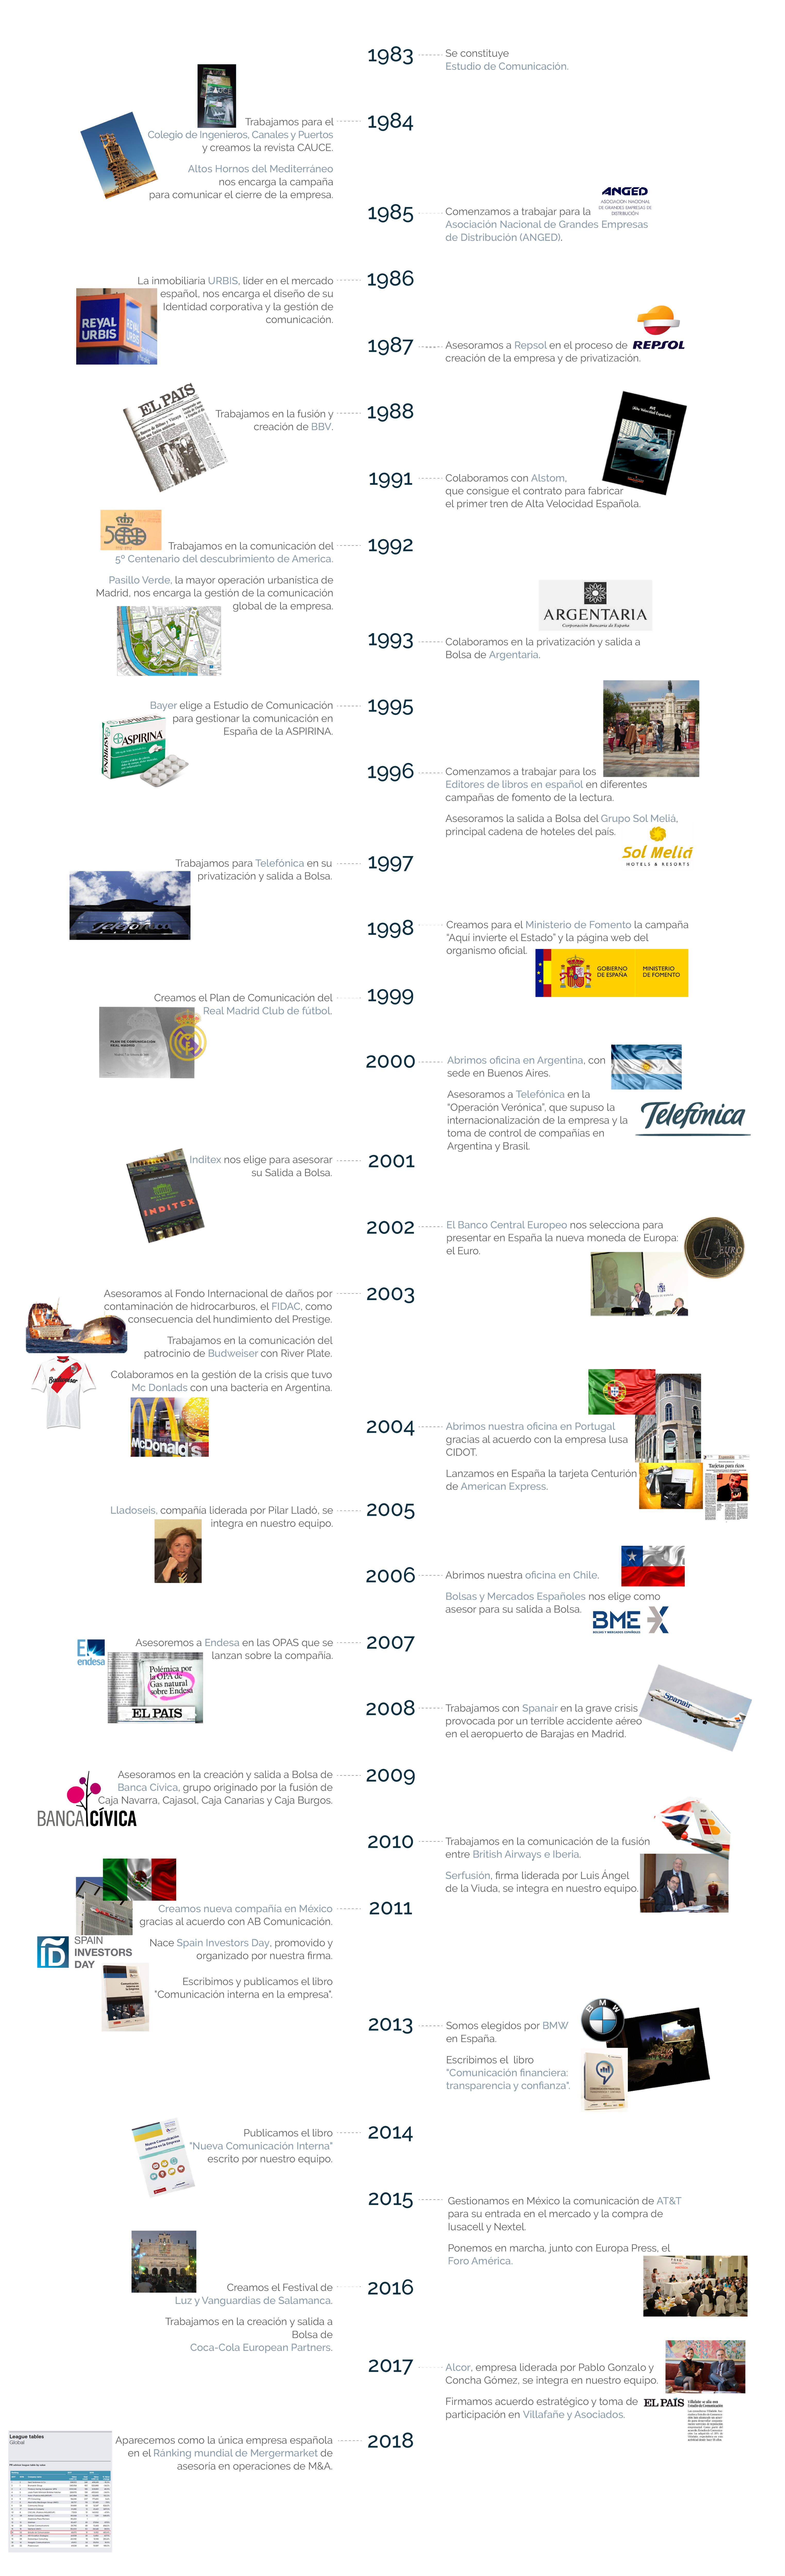 Origen Y Evolucion De La Empresa Timeline Timetoast Timelines Images